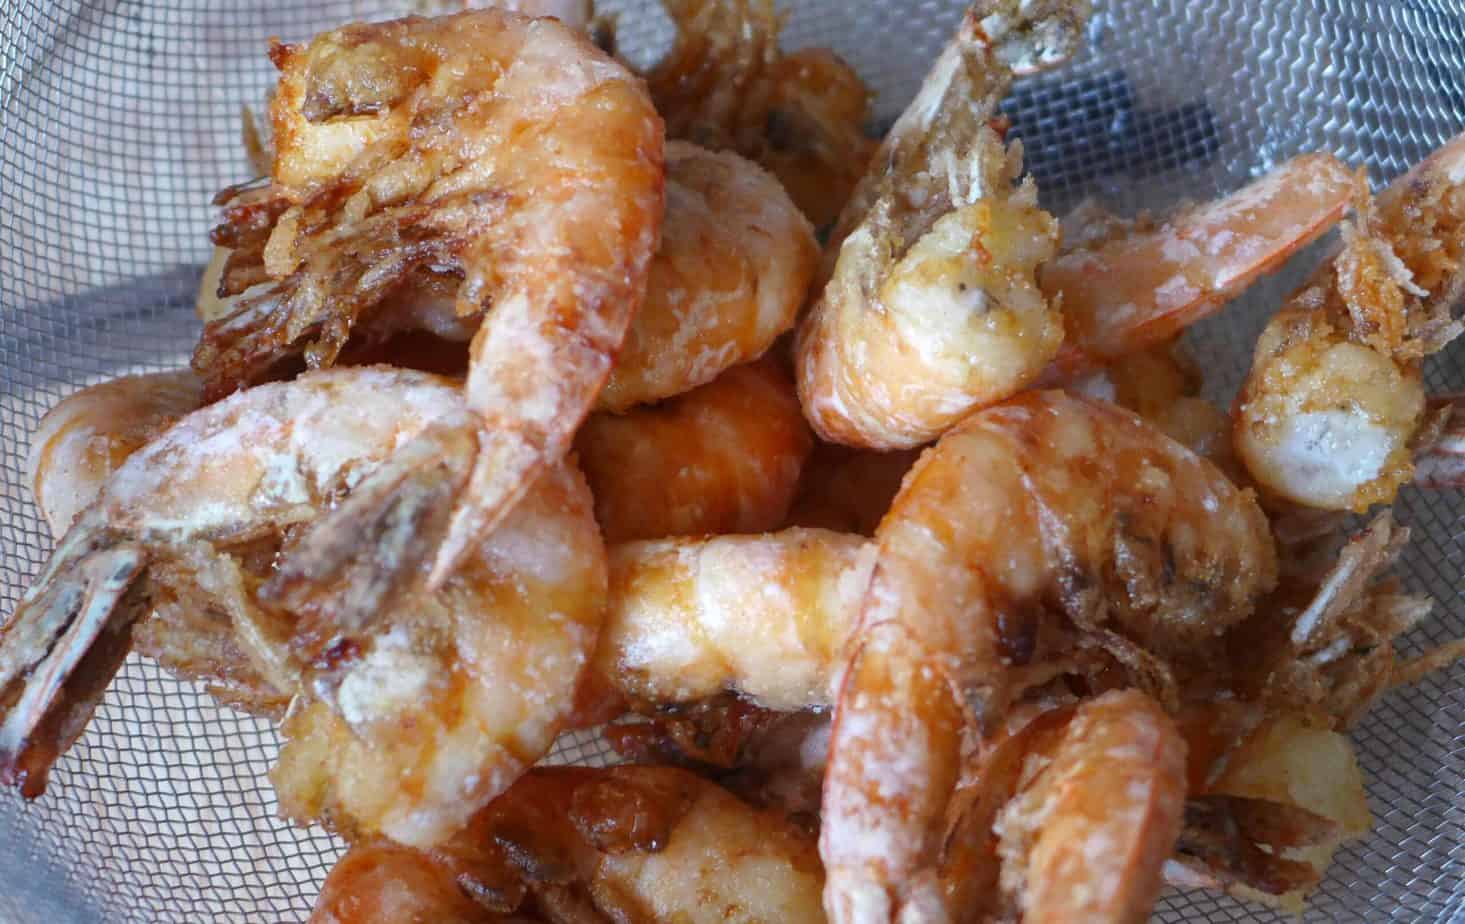 Fried shrimp in a colander